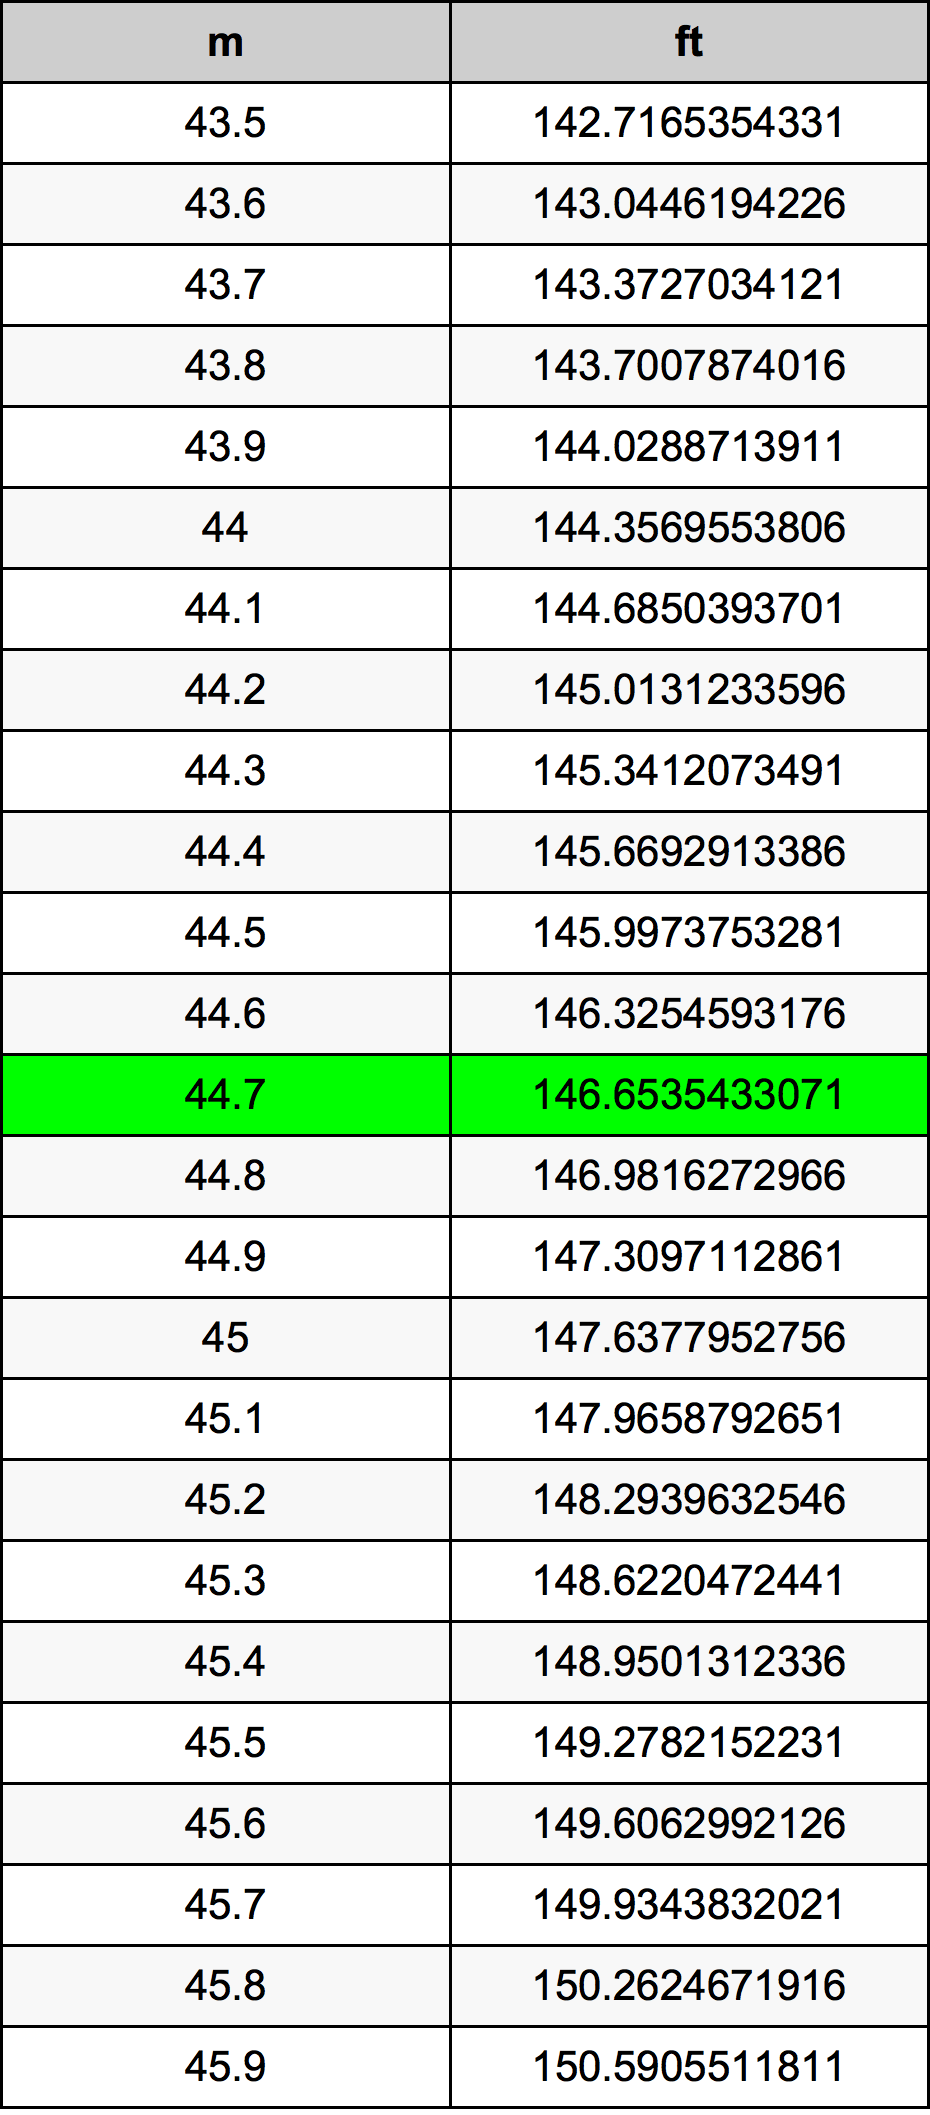 44.7 Metru tabelul de conversie